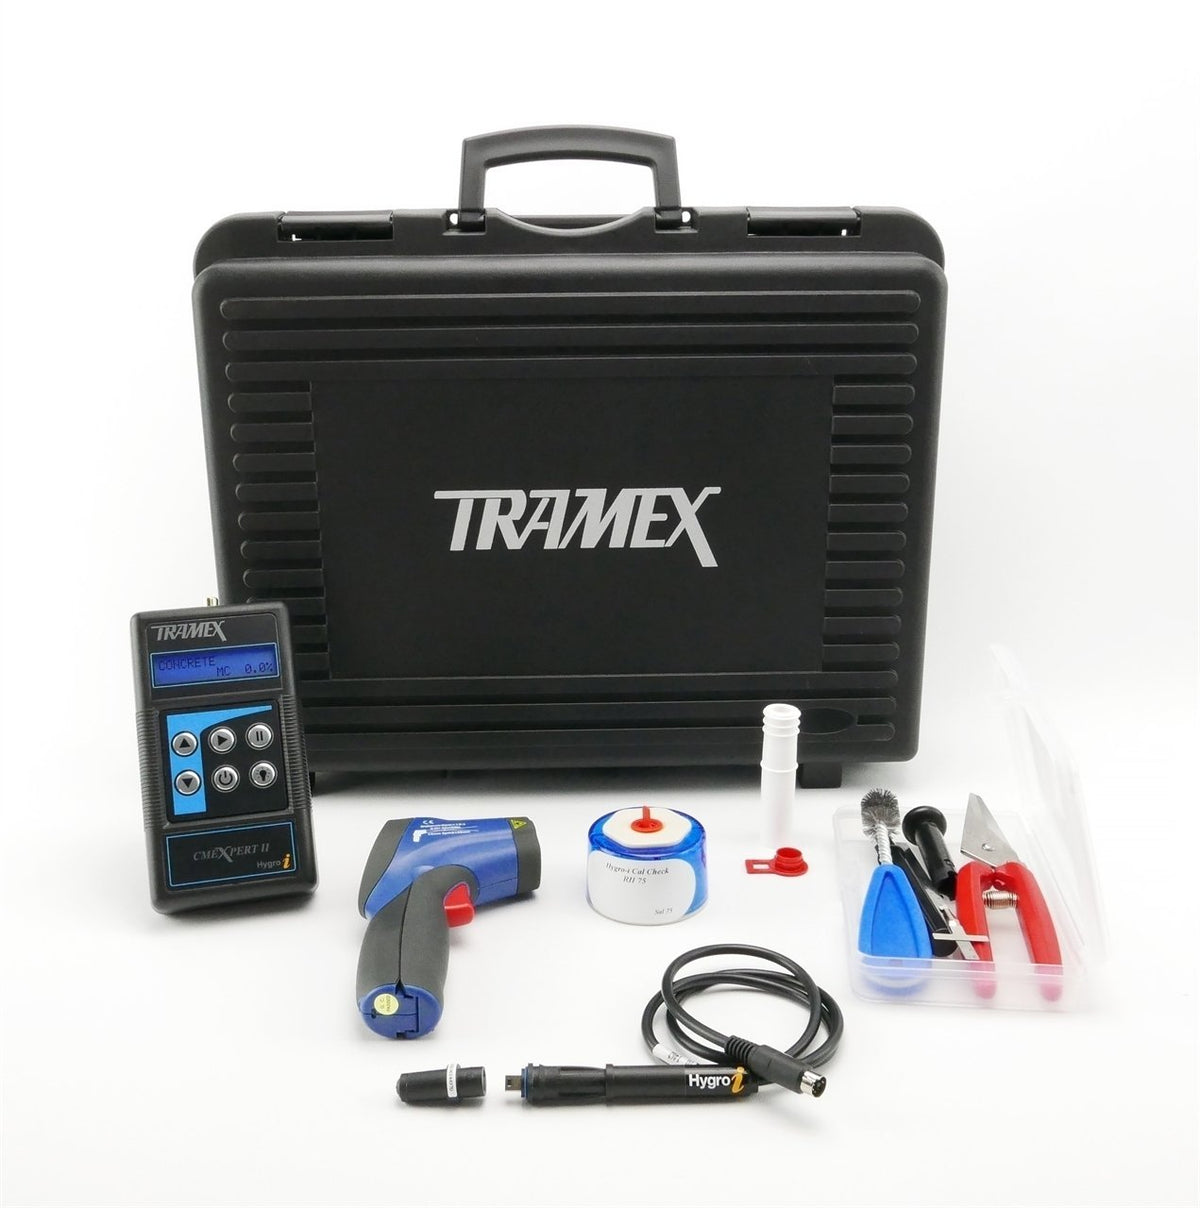 Tramex Concrete Inspection Kit - MIZA